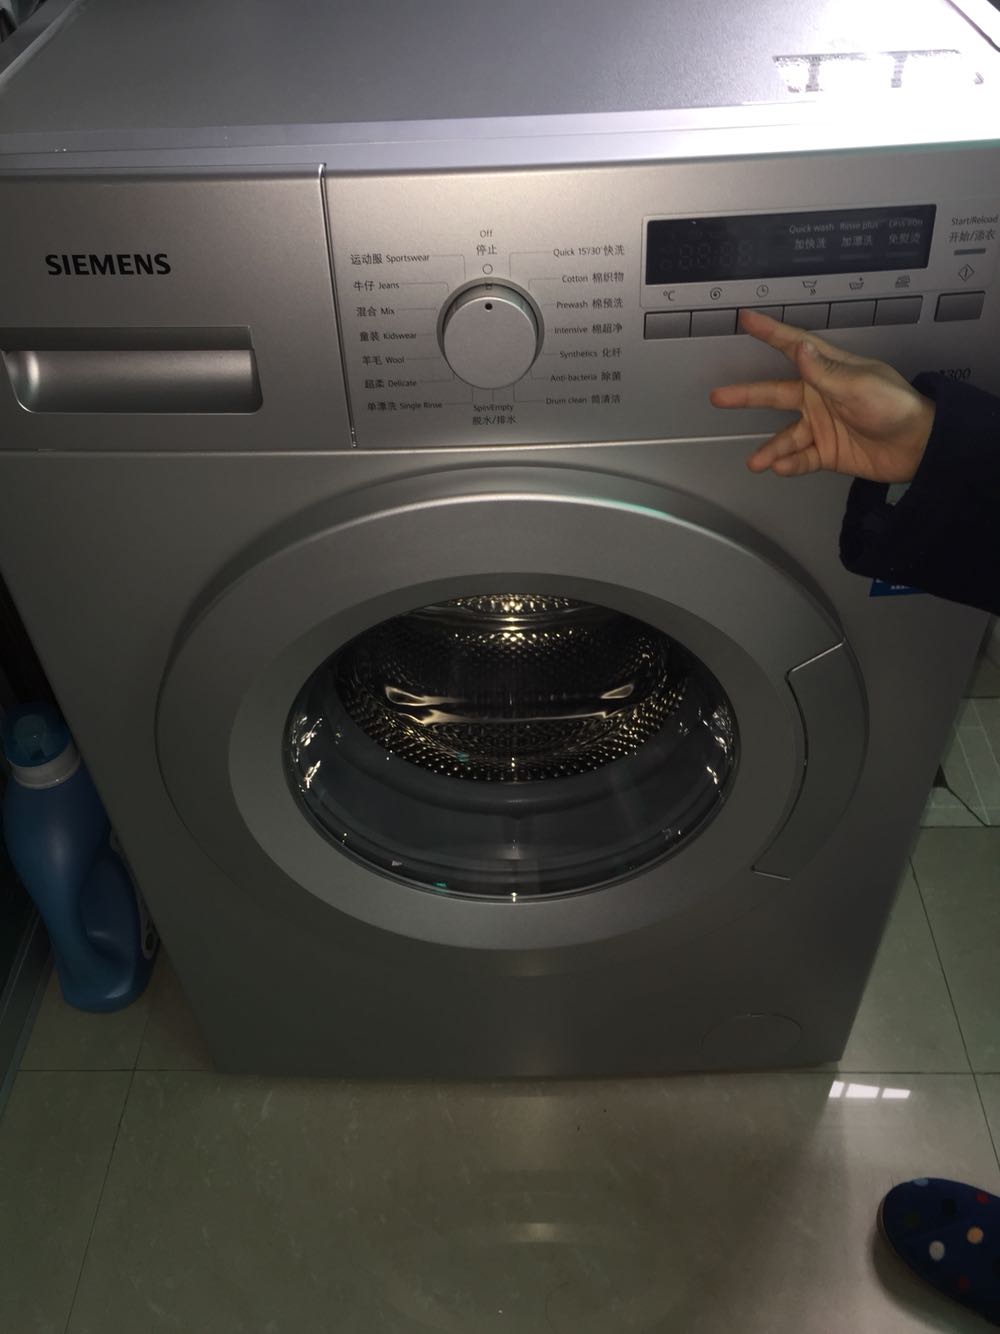 洗衣机 西门子洗衣机 西门子xqg70-wm12e2680w 点评  洗衣机声音不大